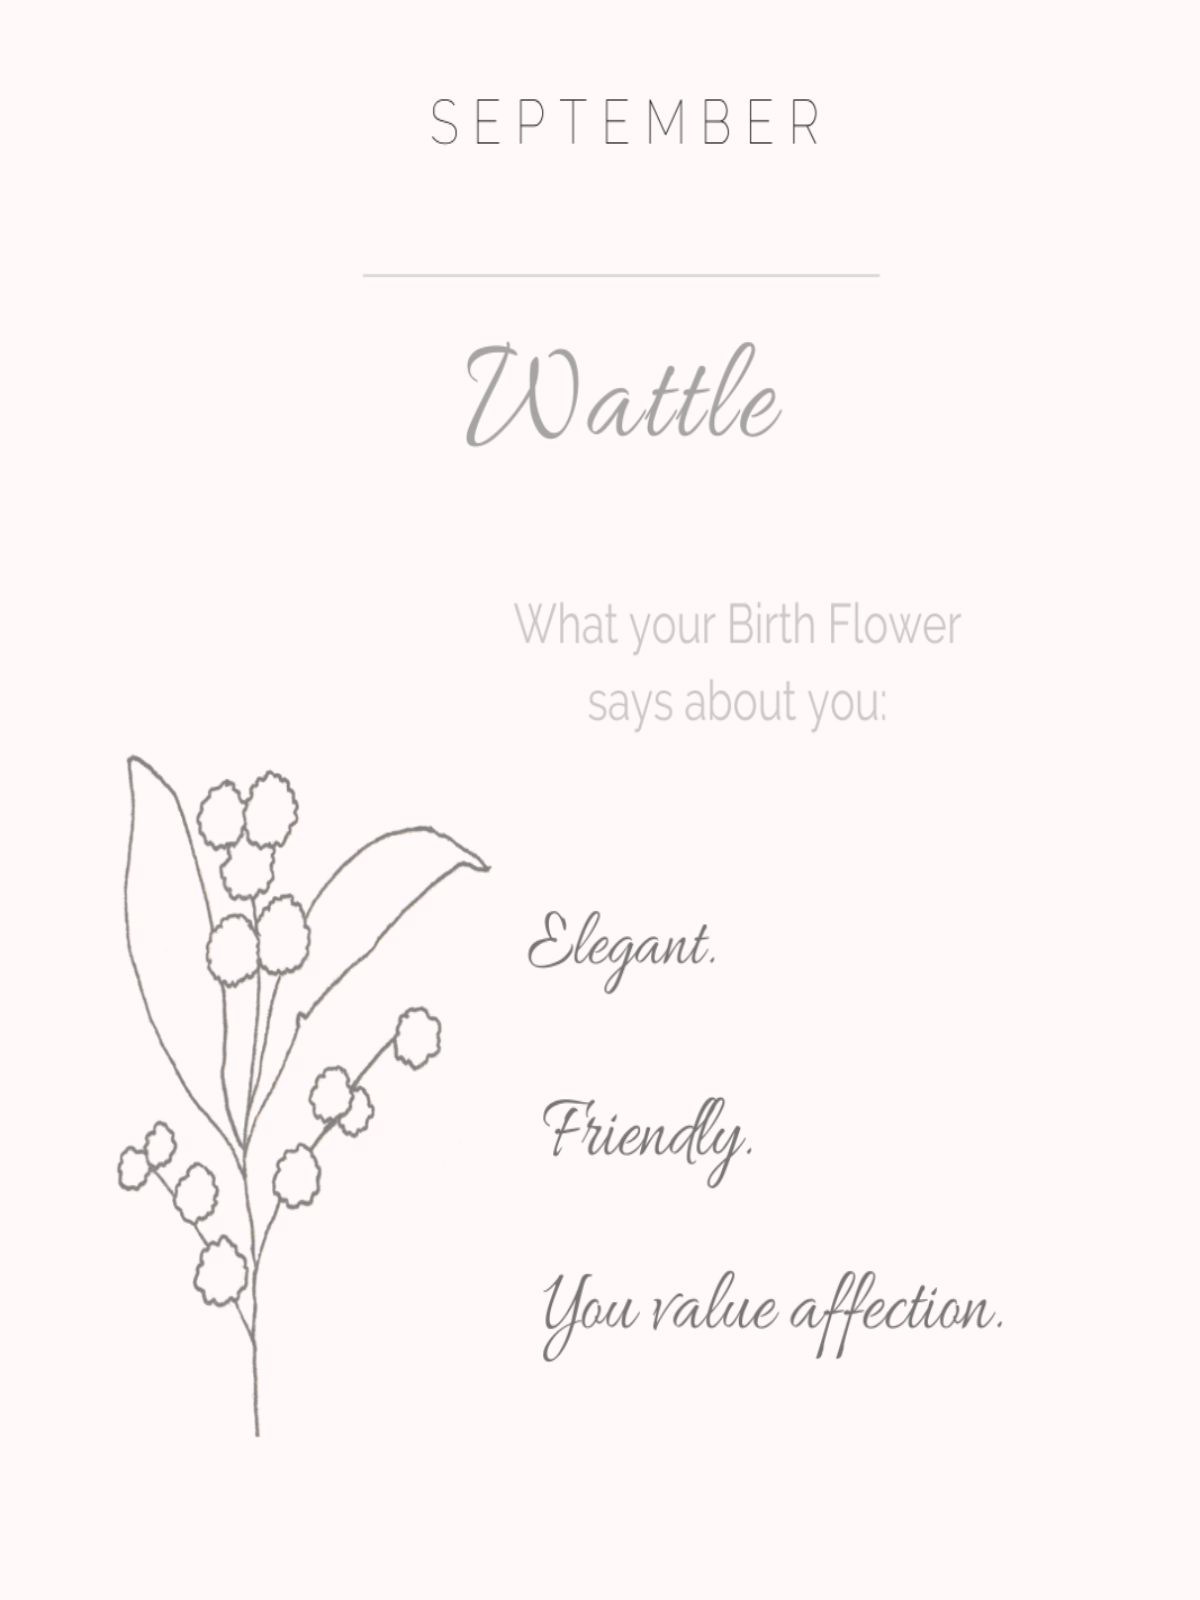 Wattle - September Birth Flower